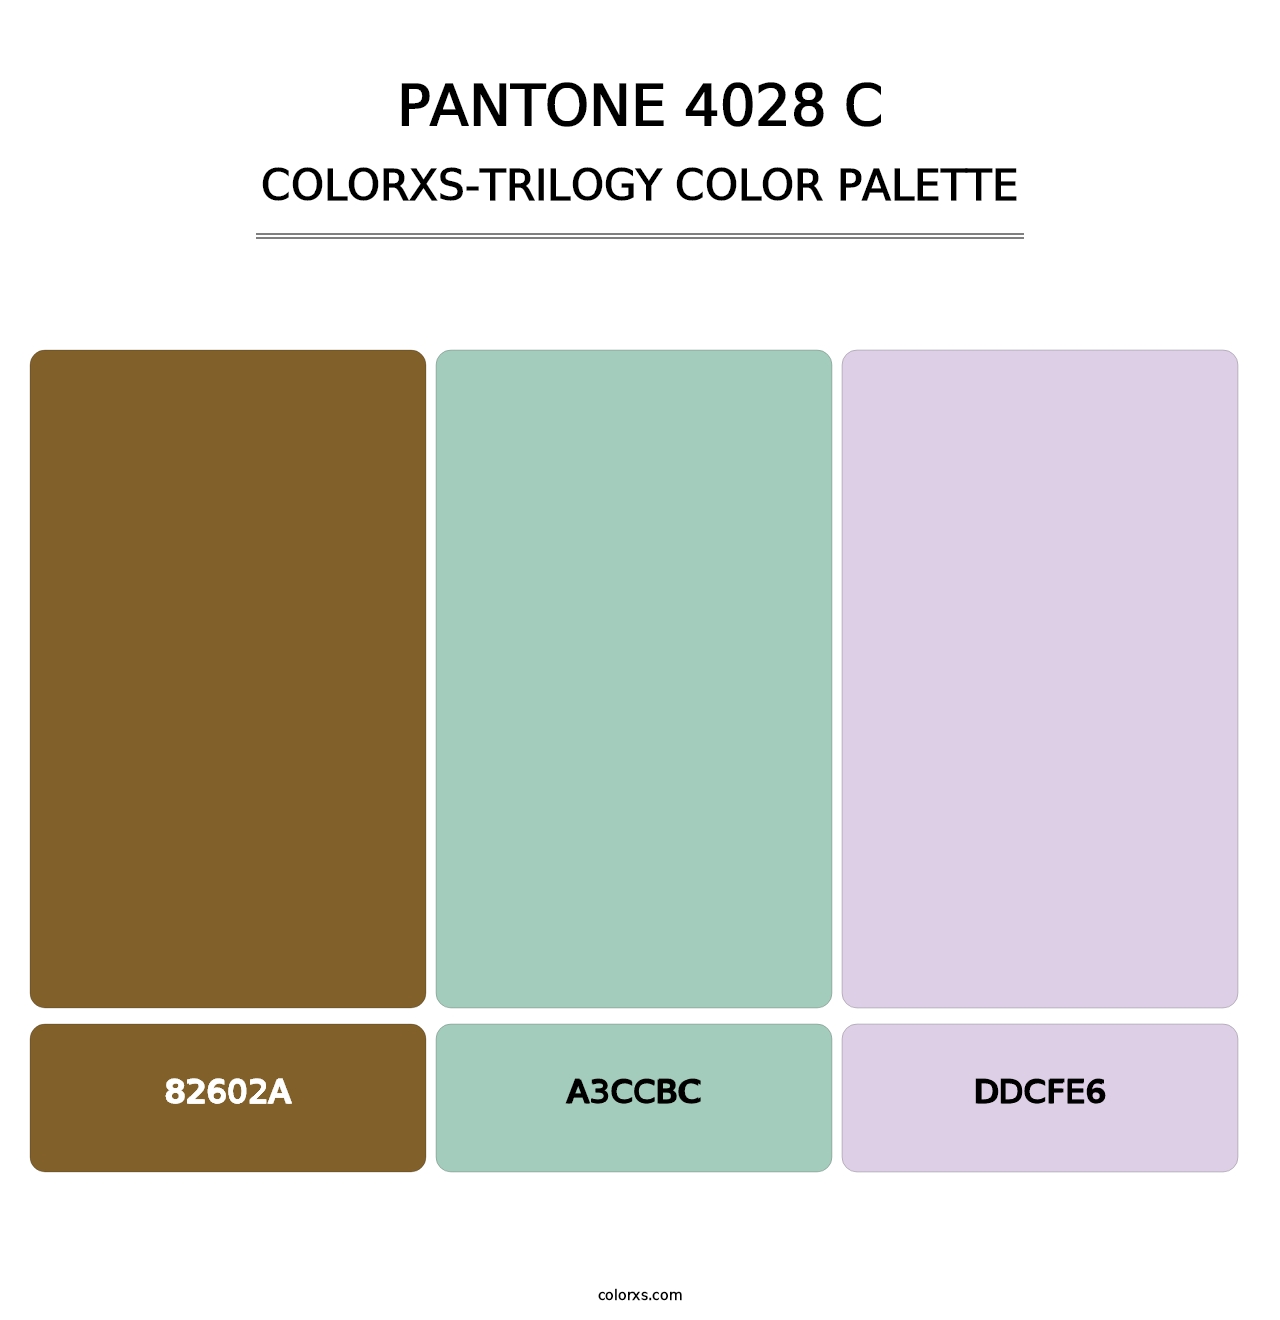 PANTONE 4028 C - Colorxs Trilogy Palette